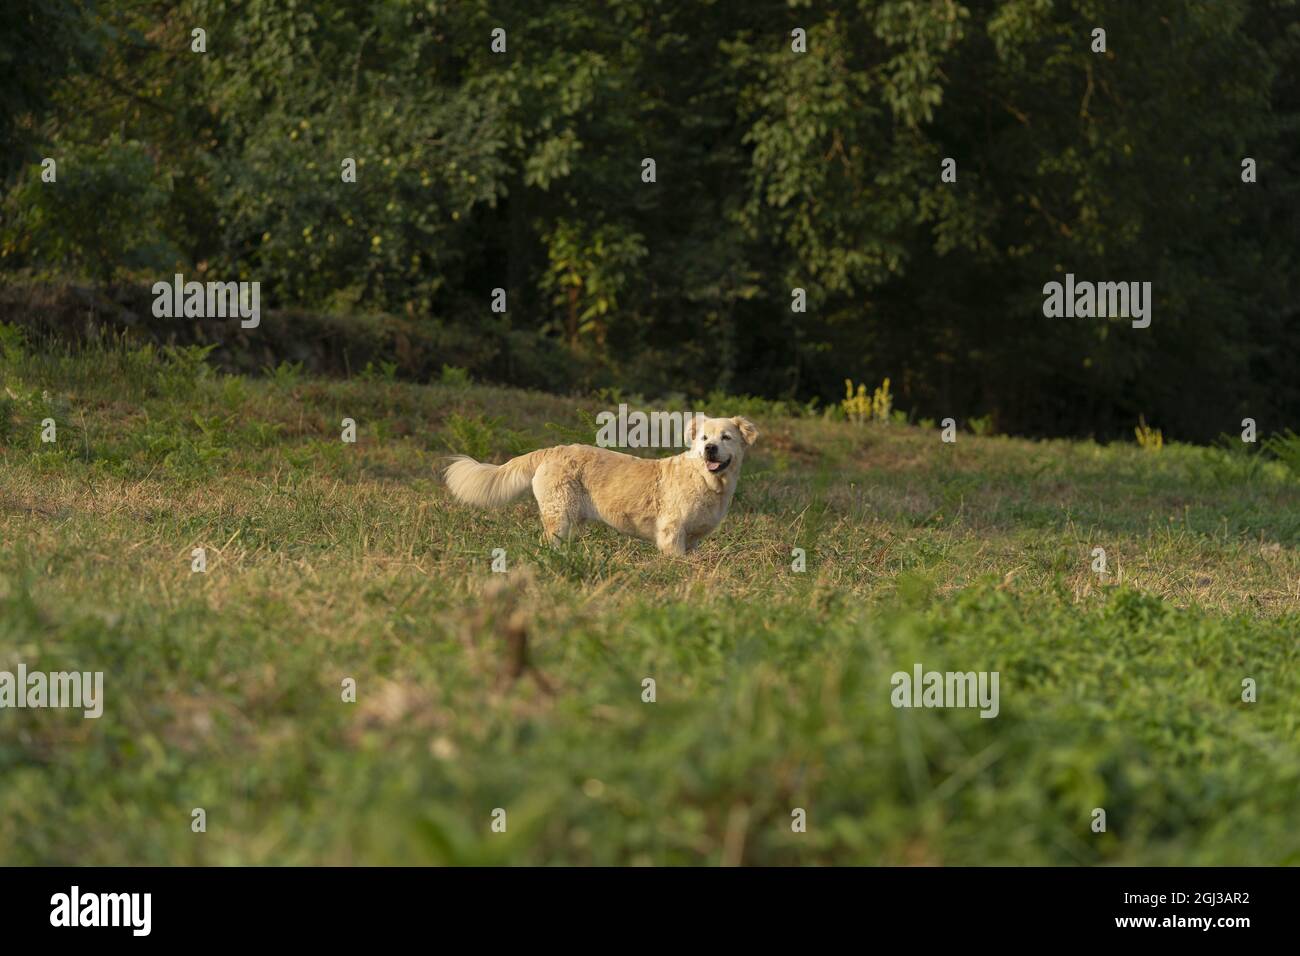 Mignon chien de retriever doré avec nanisme nageant dans la rivière Banque D'Images